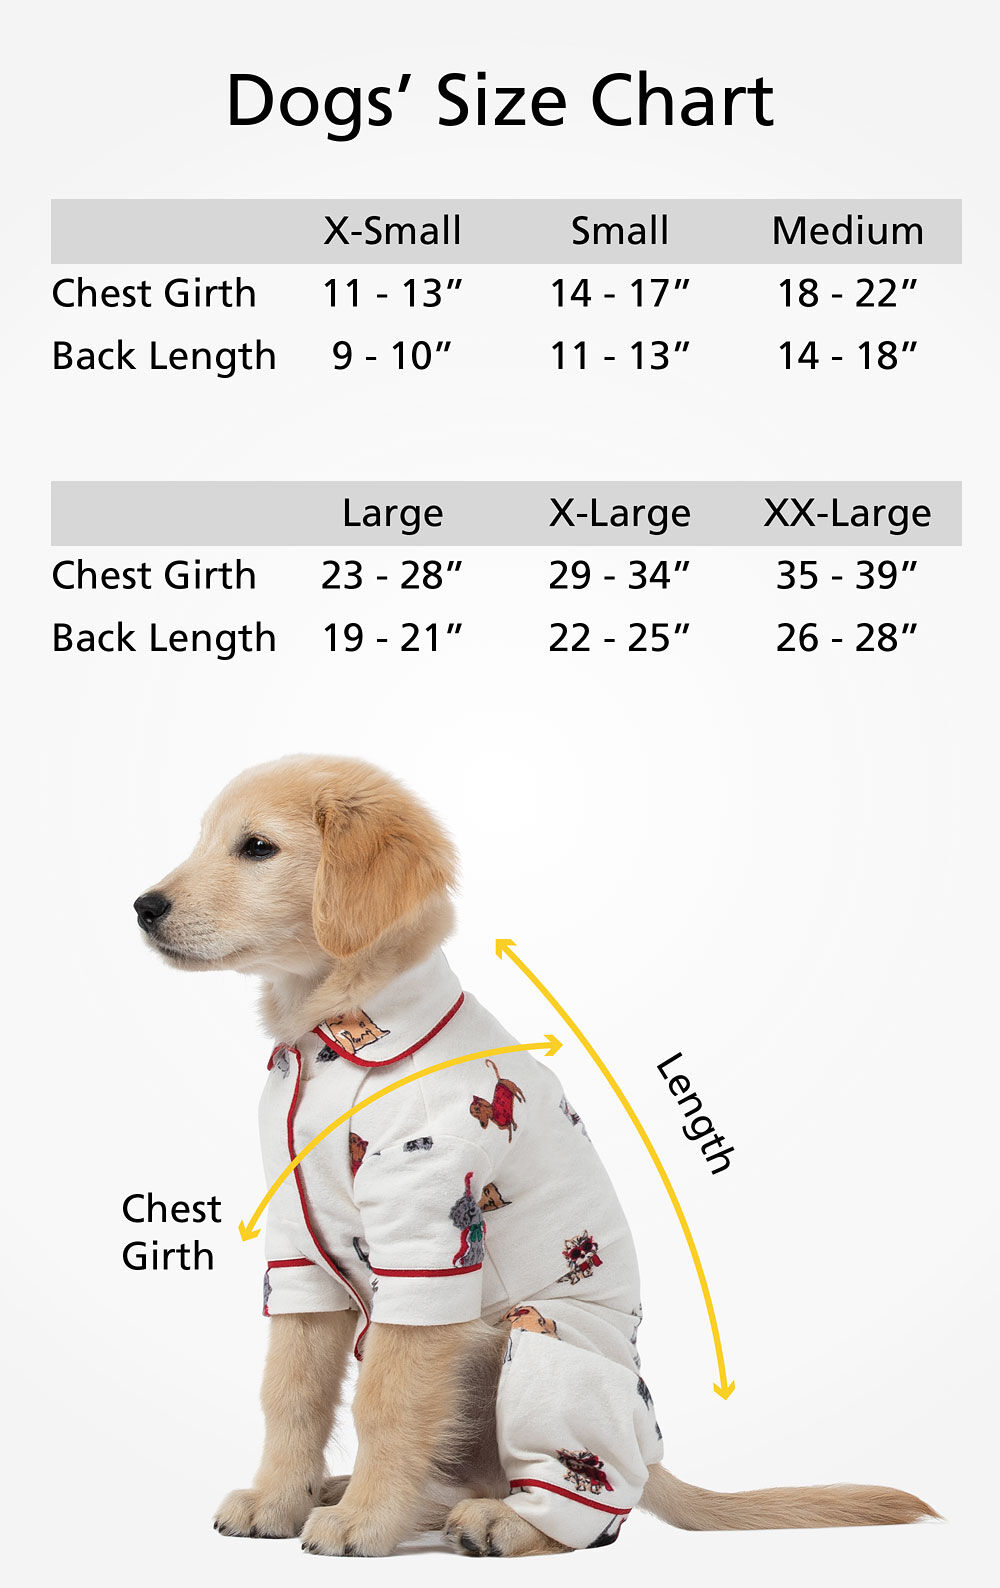 Christmas Dog Print Flannel Pajamas for Dog & Owner